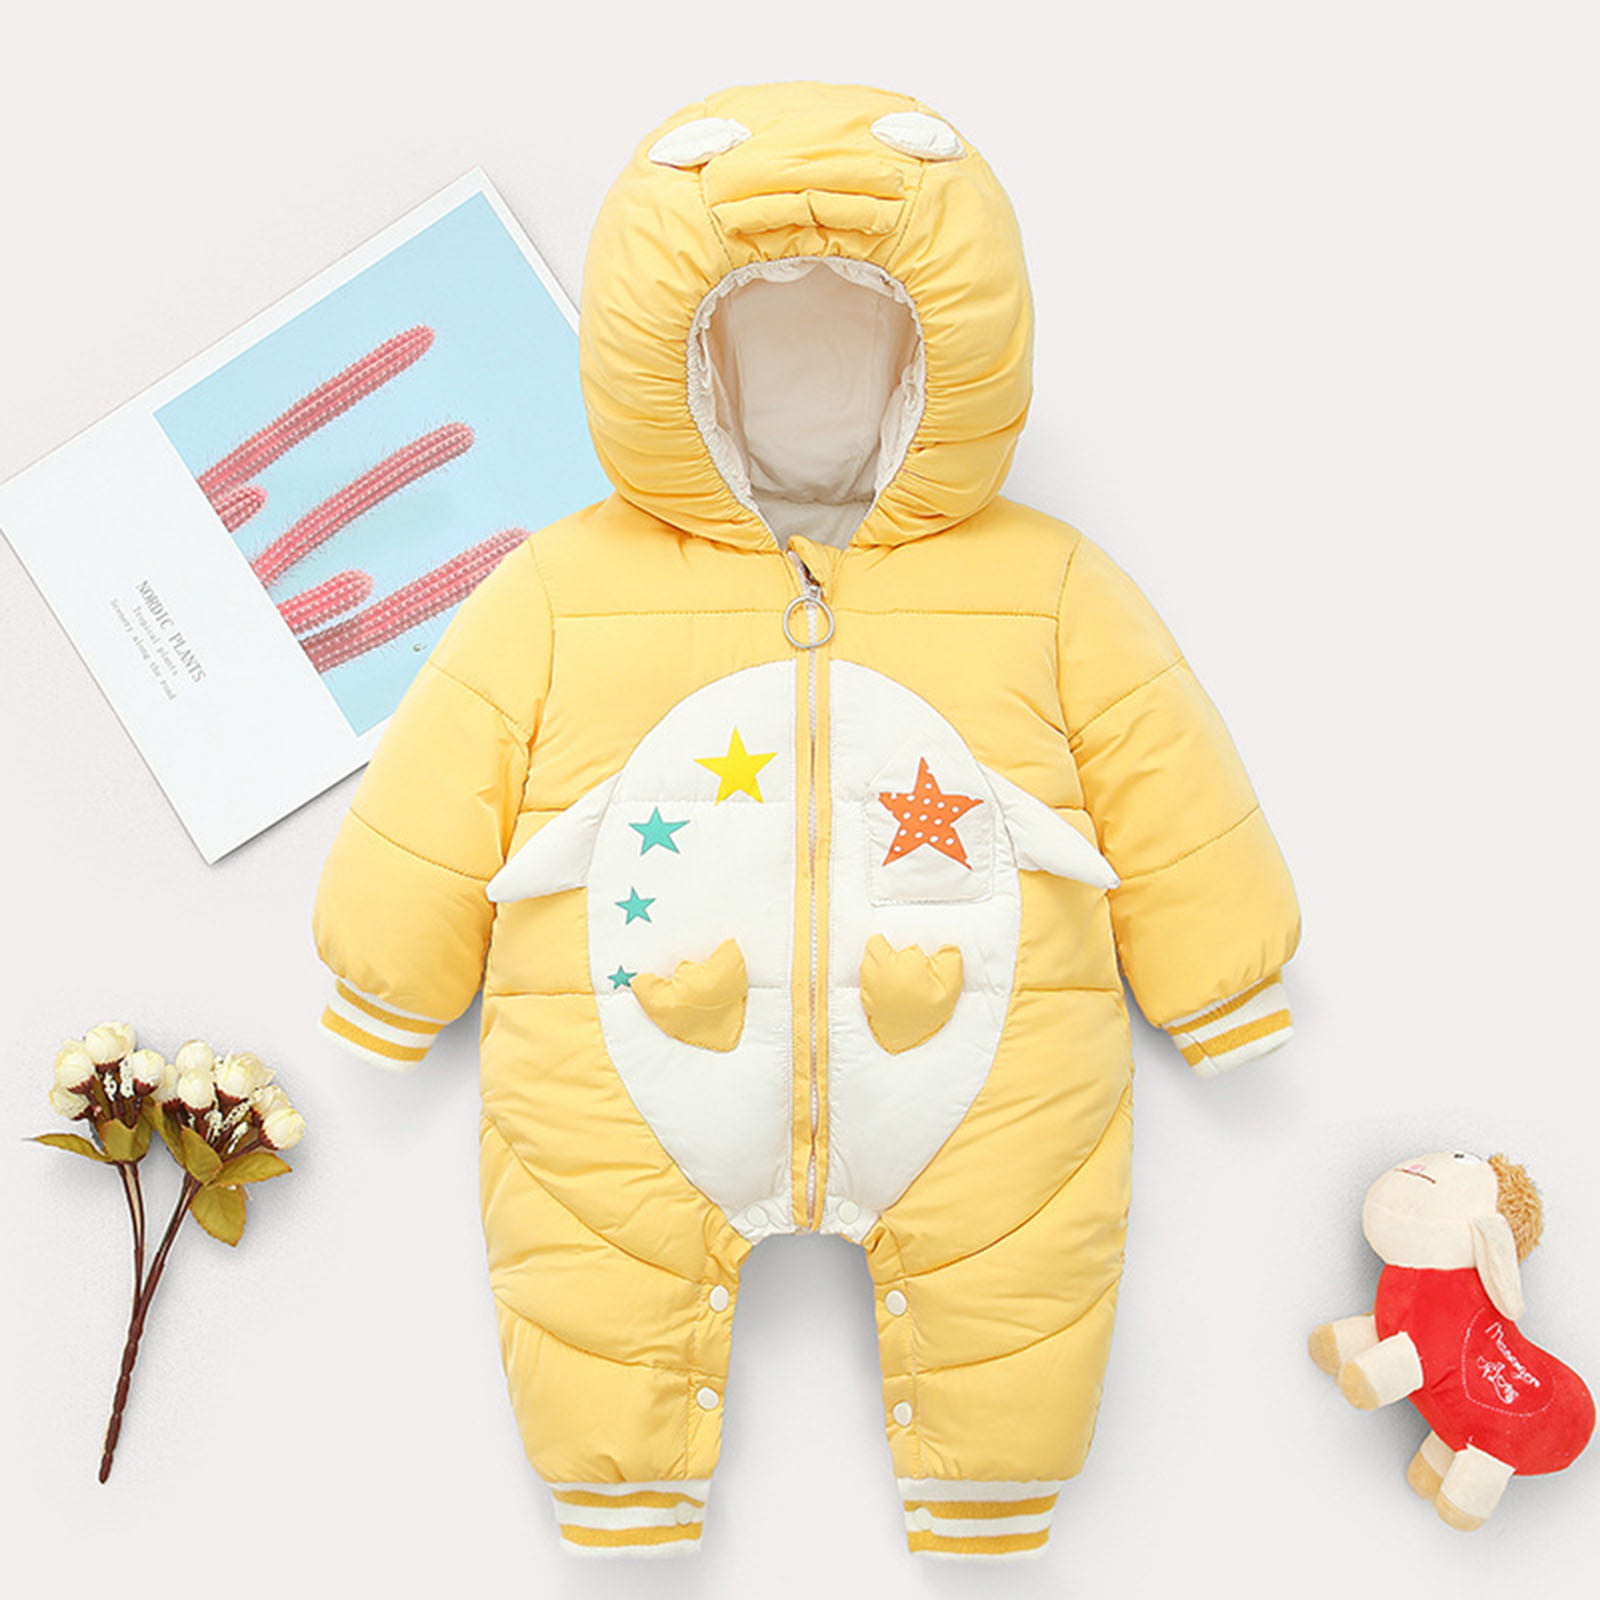 Bestgift Unisex Baby Winter Snowsuit Toddler Hoodied Footie Romper Outwear Coat 